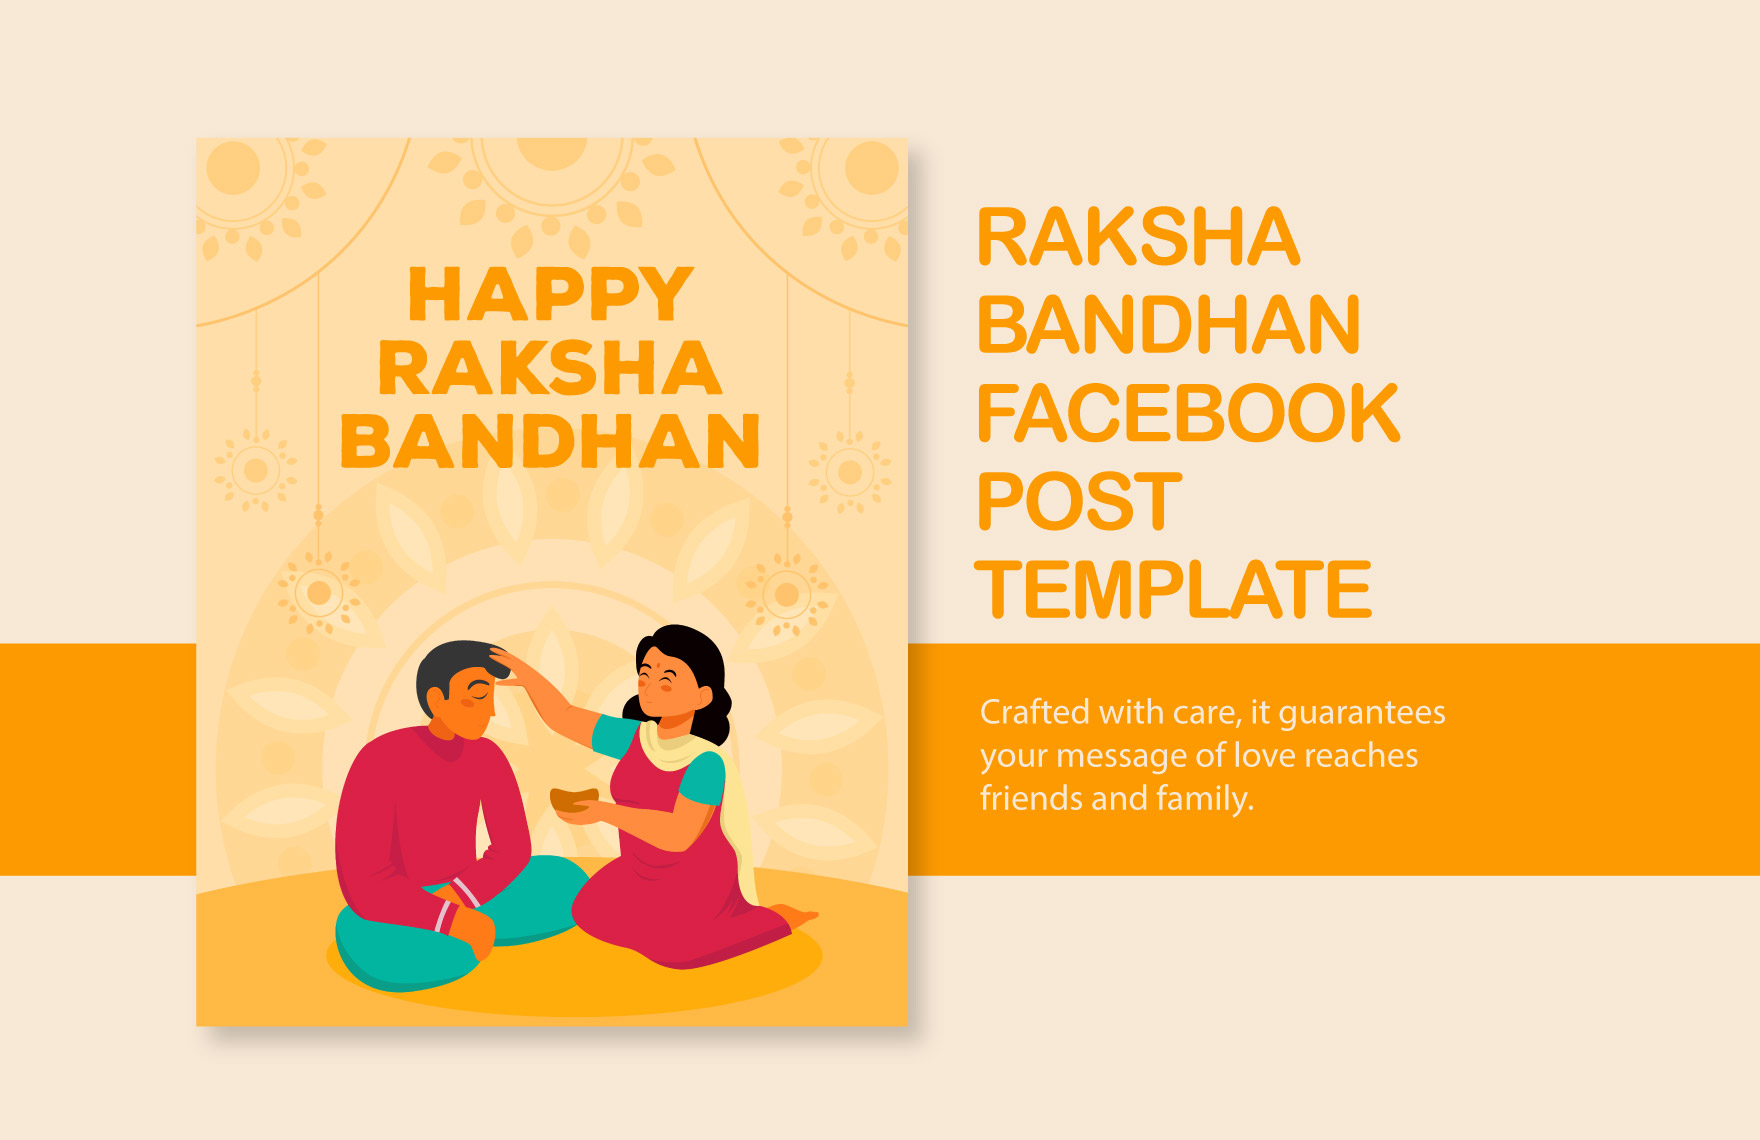 Free Raksha Bandhan Facebook Post Template in Illustrator, PSD, PNG